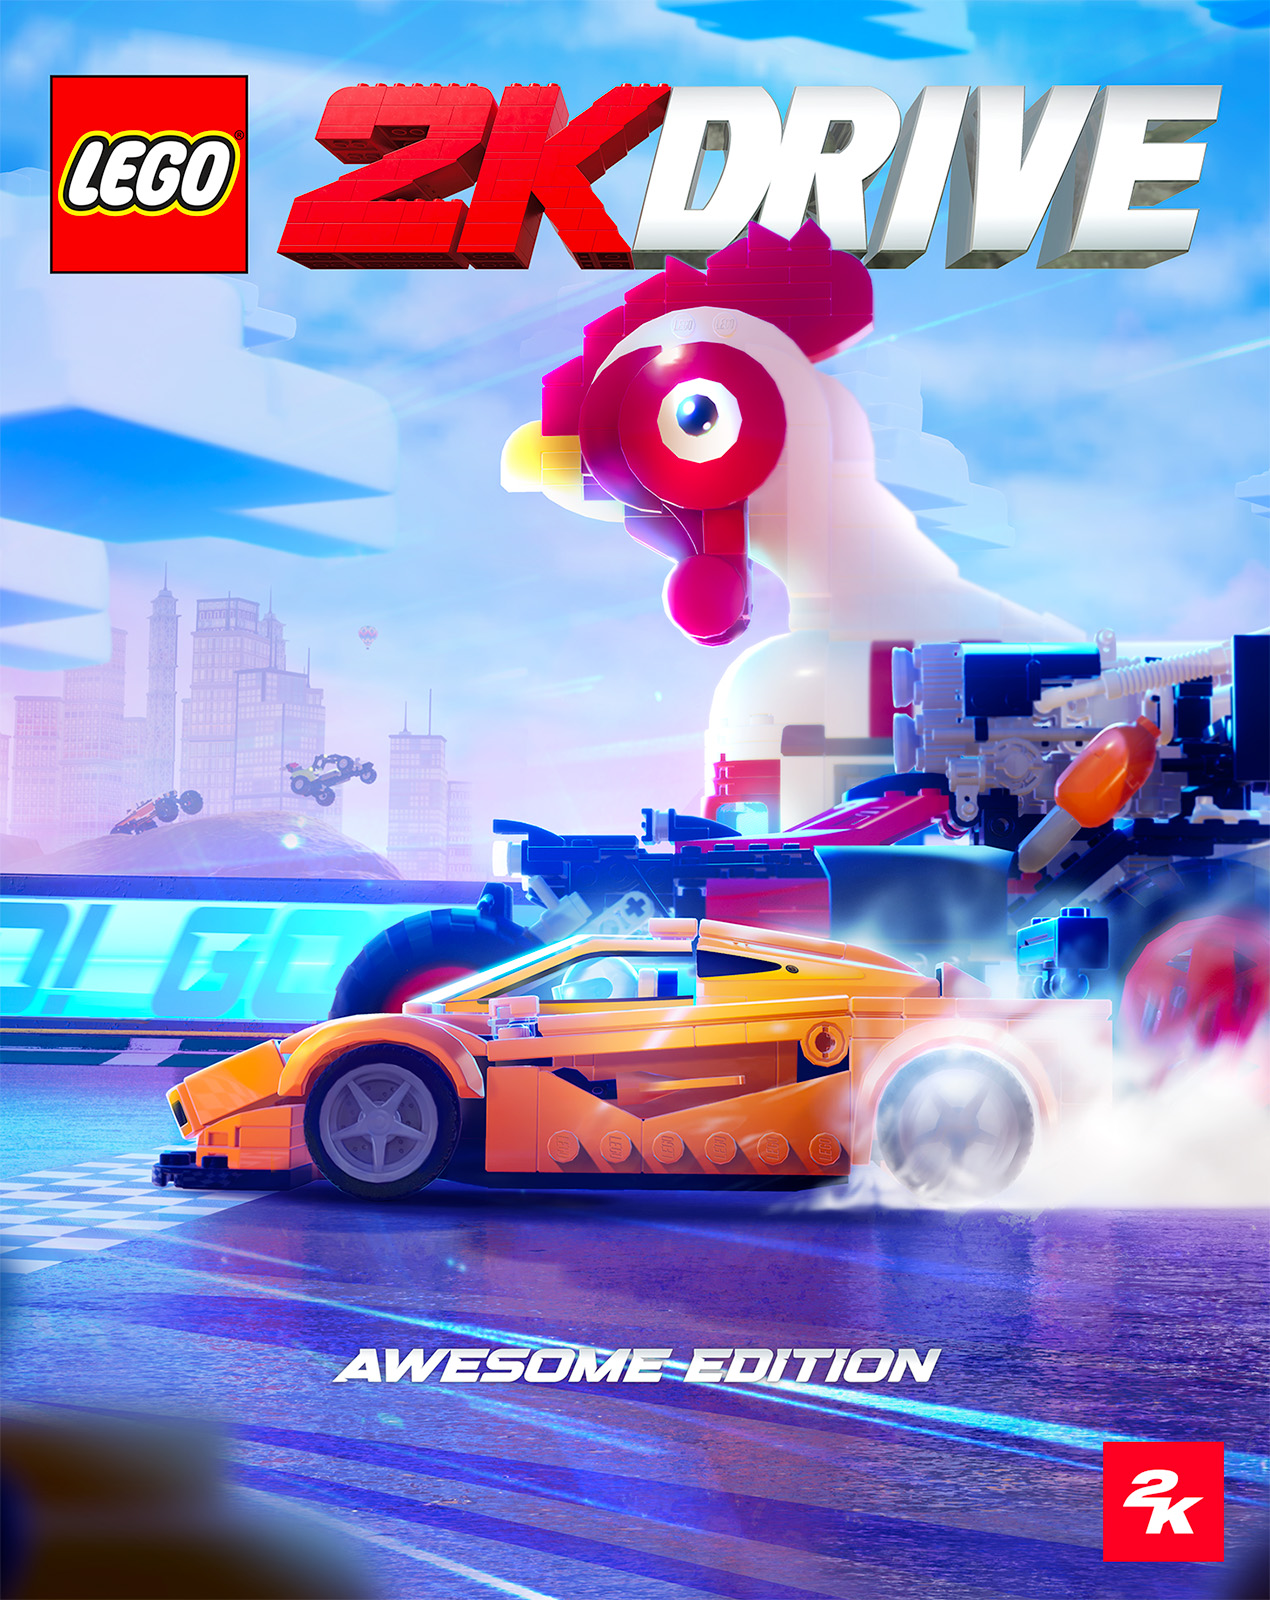 LEGO 2K Drive : le prochain jeu vidéo LEGO est annoncé pour le 19 mai 2023